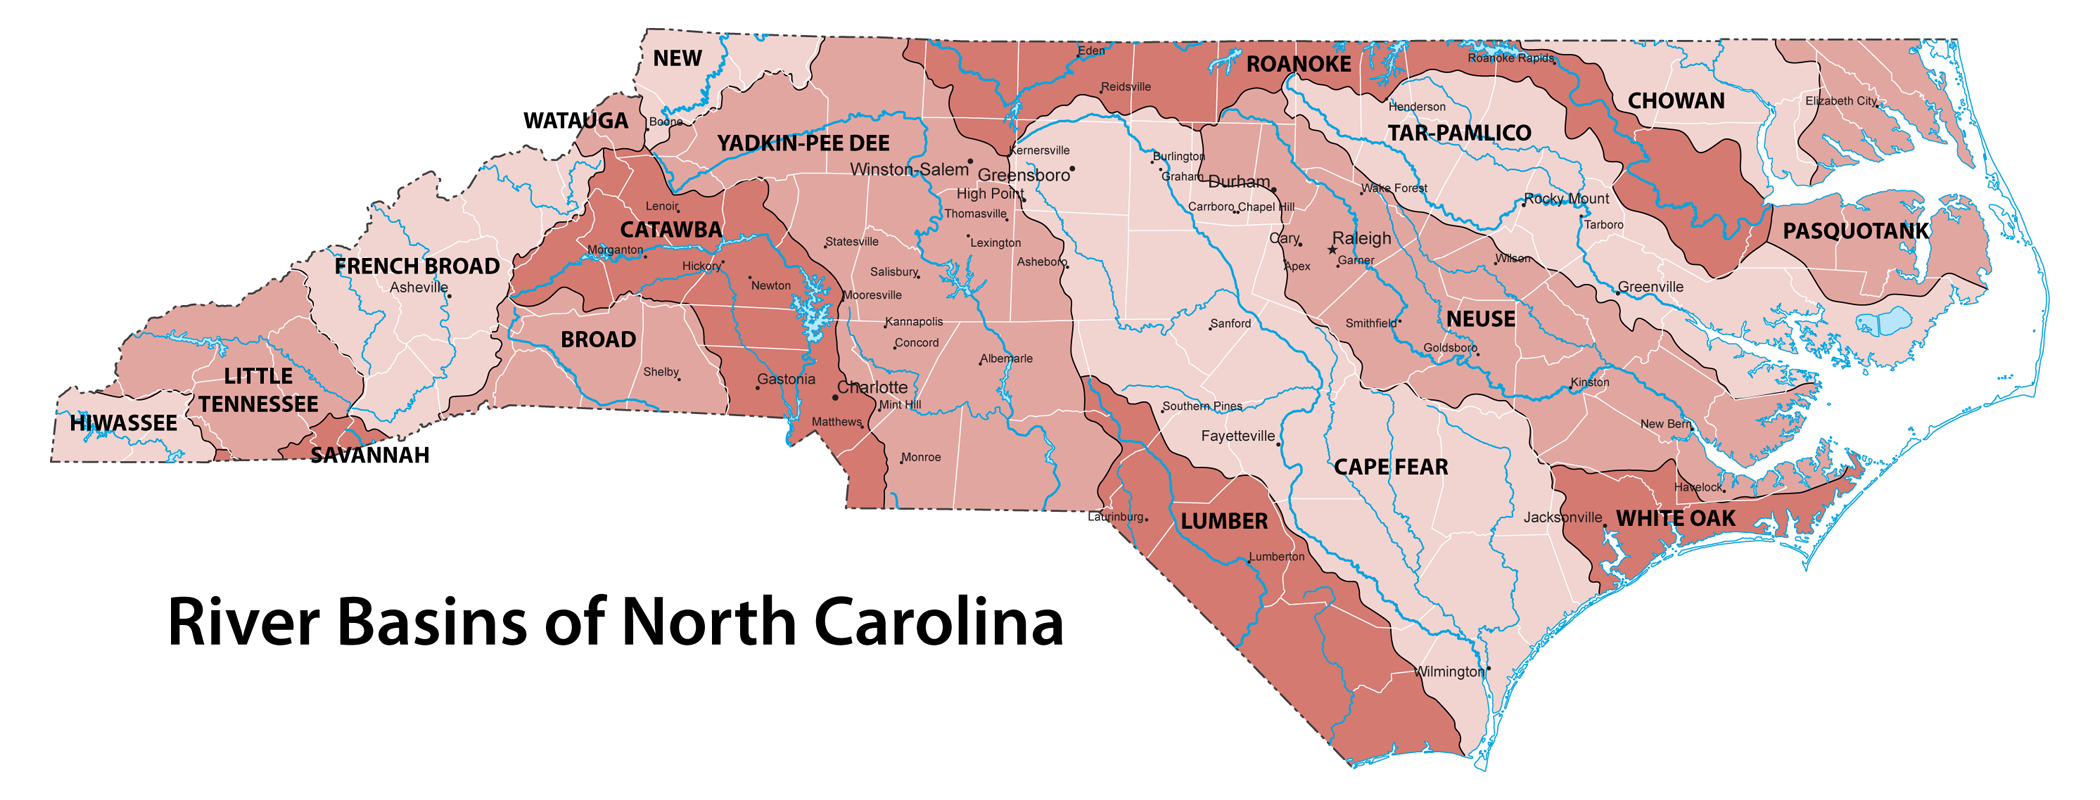 Rivers and river basins of North Carolina